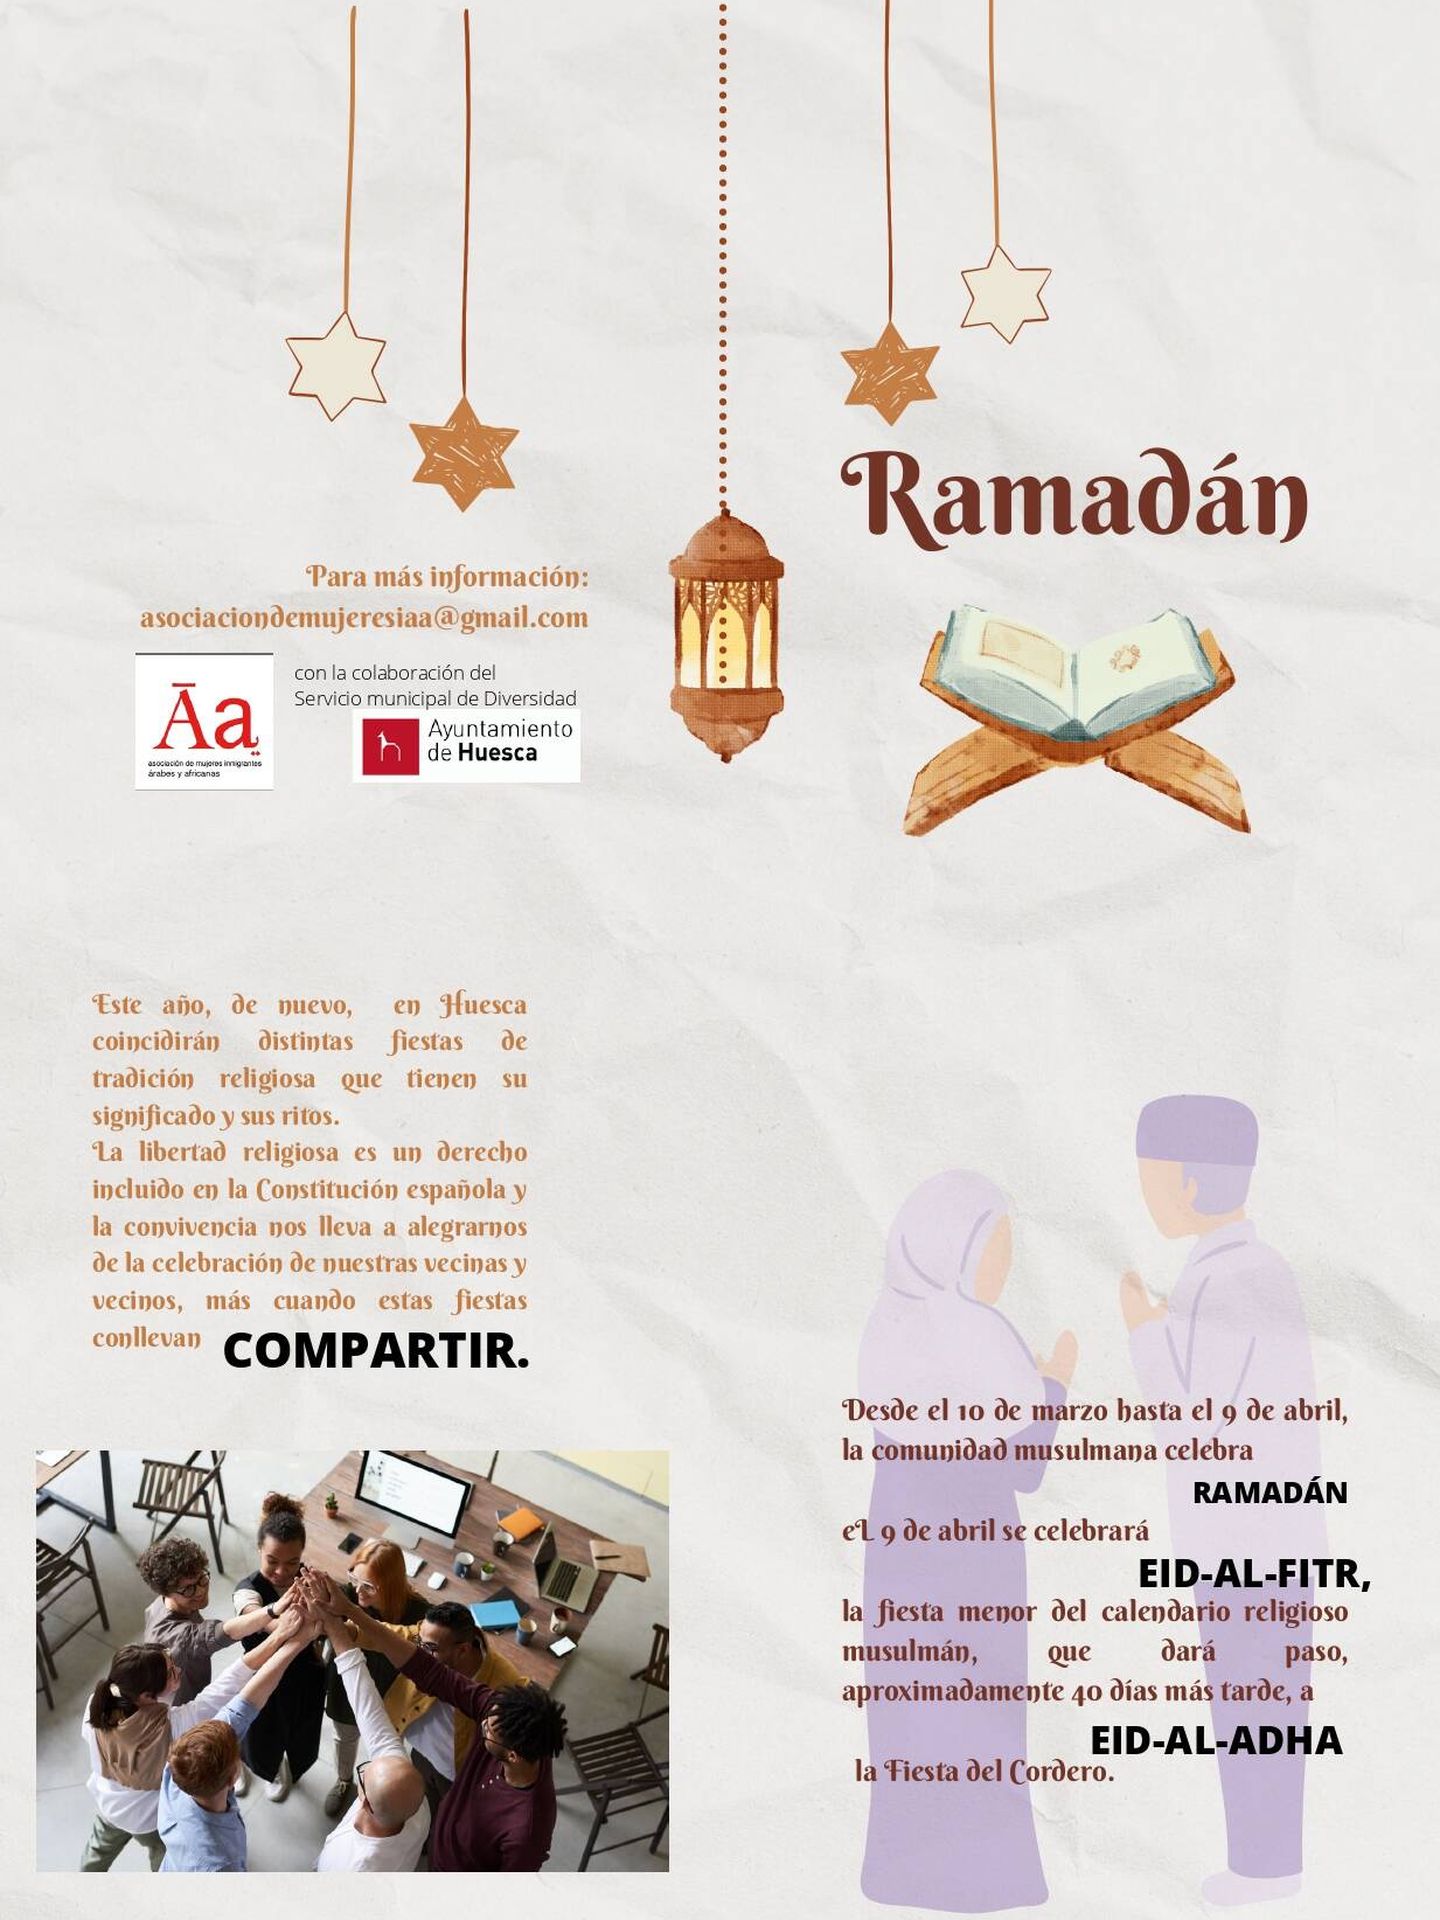 El folleto del Ramadán que criticó Vox. (Cedida)